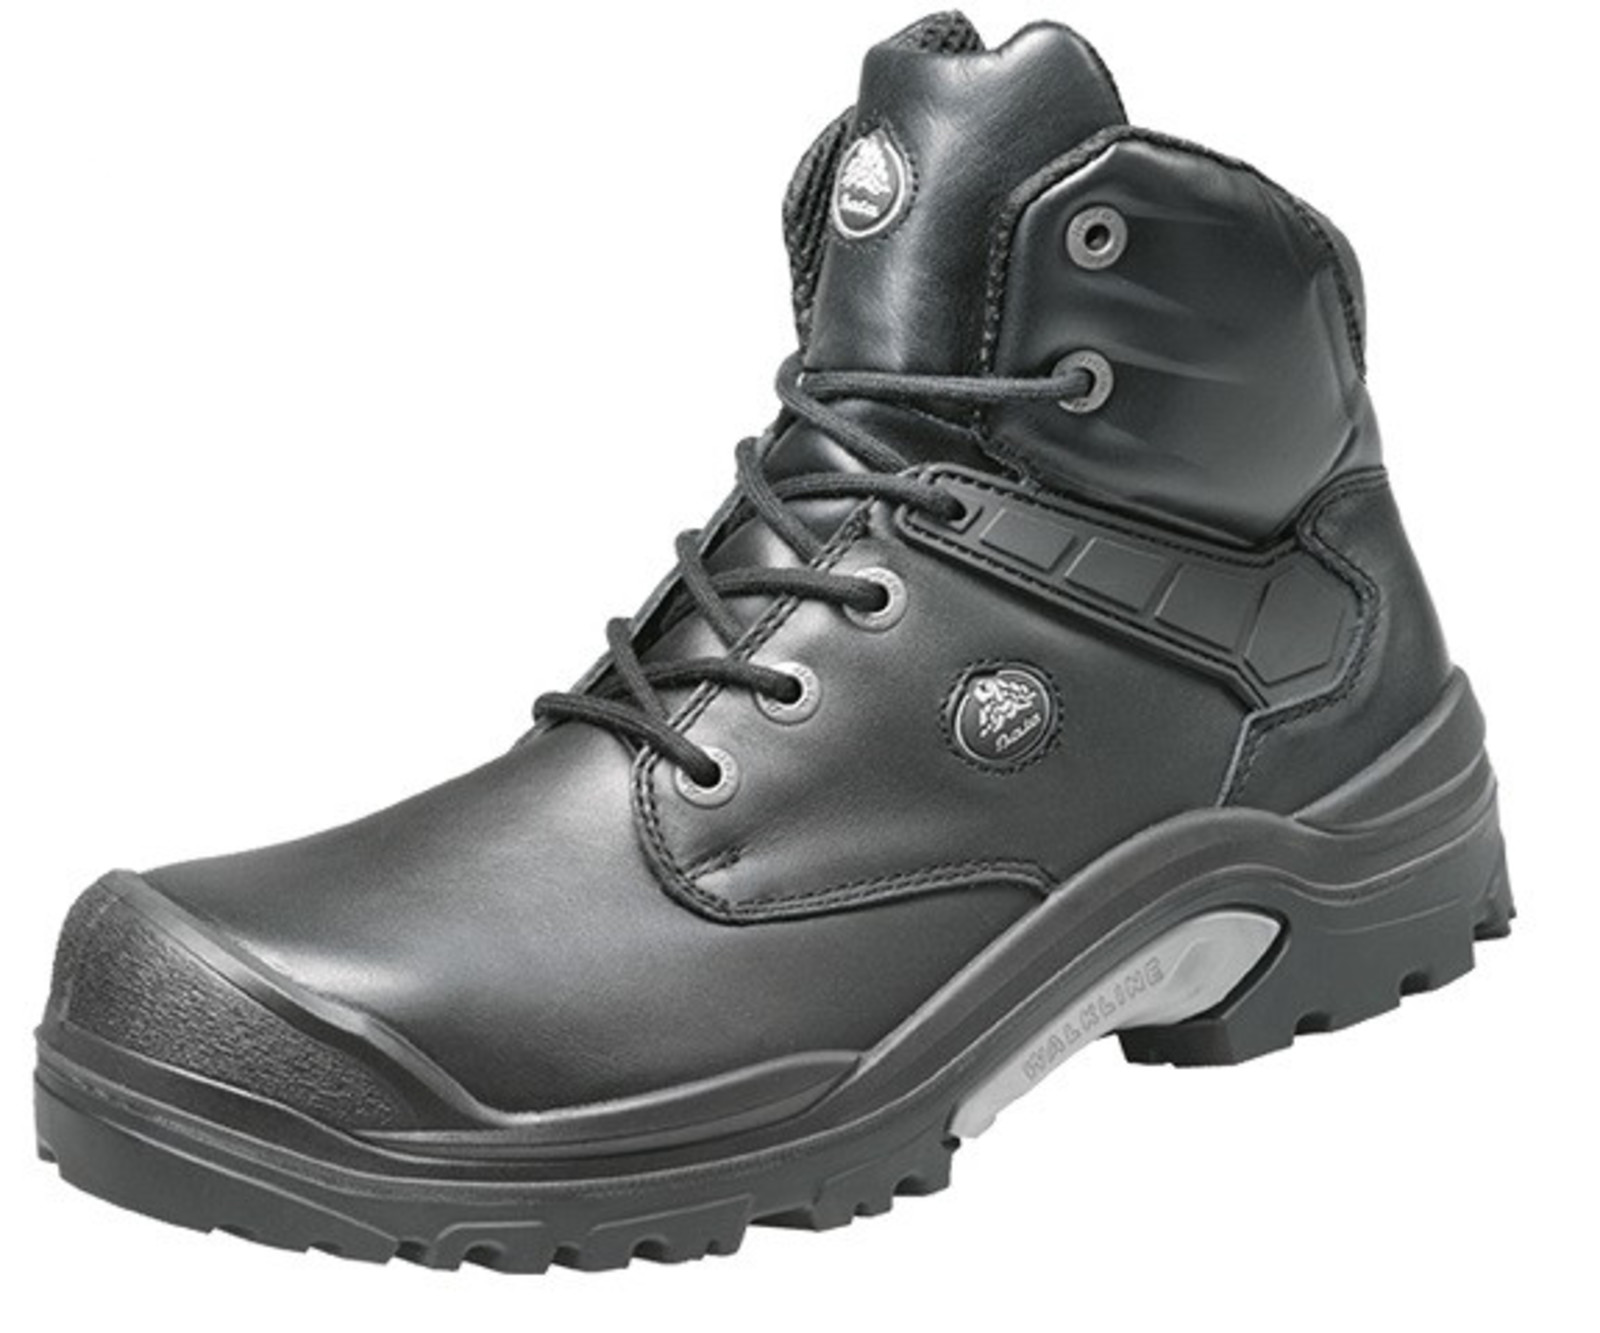 Bezpečnostná obuv Baťa PWR S3 - veľkosť: 42, farba: čierna